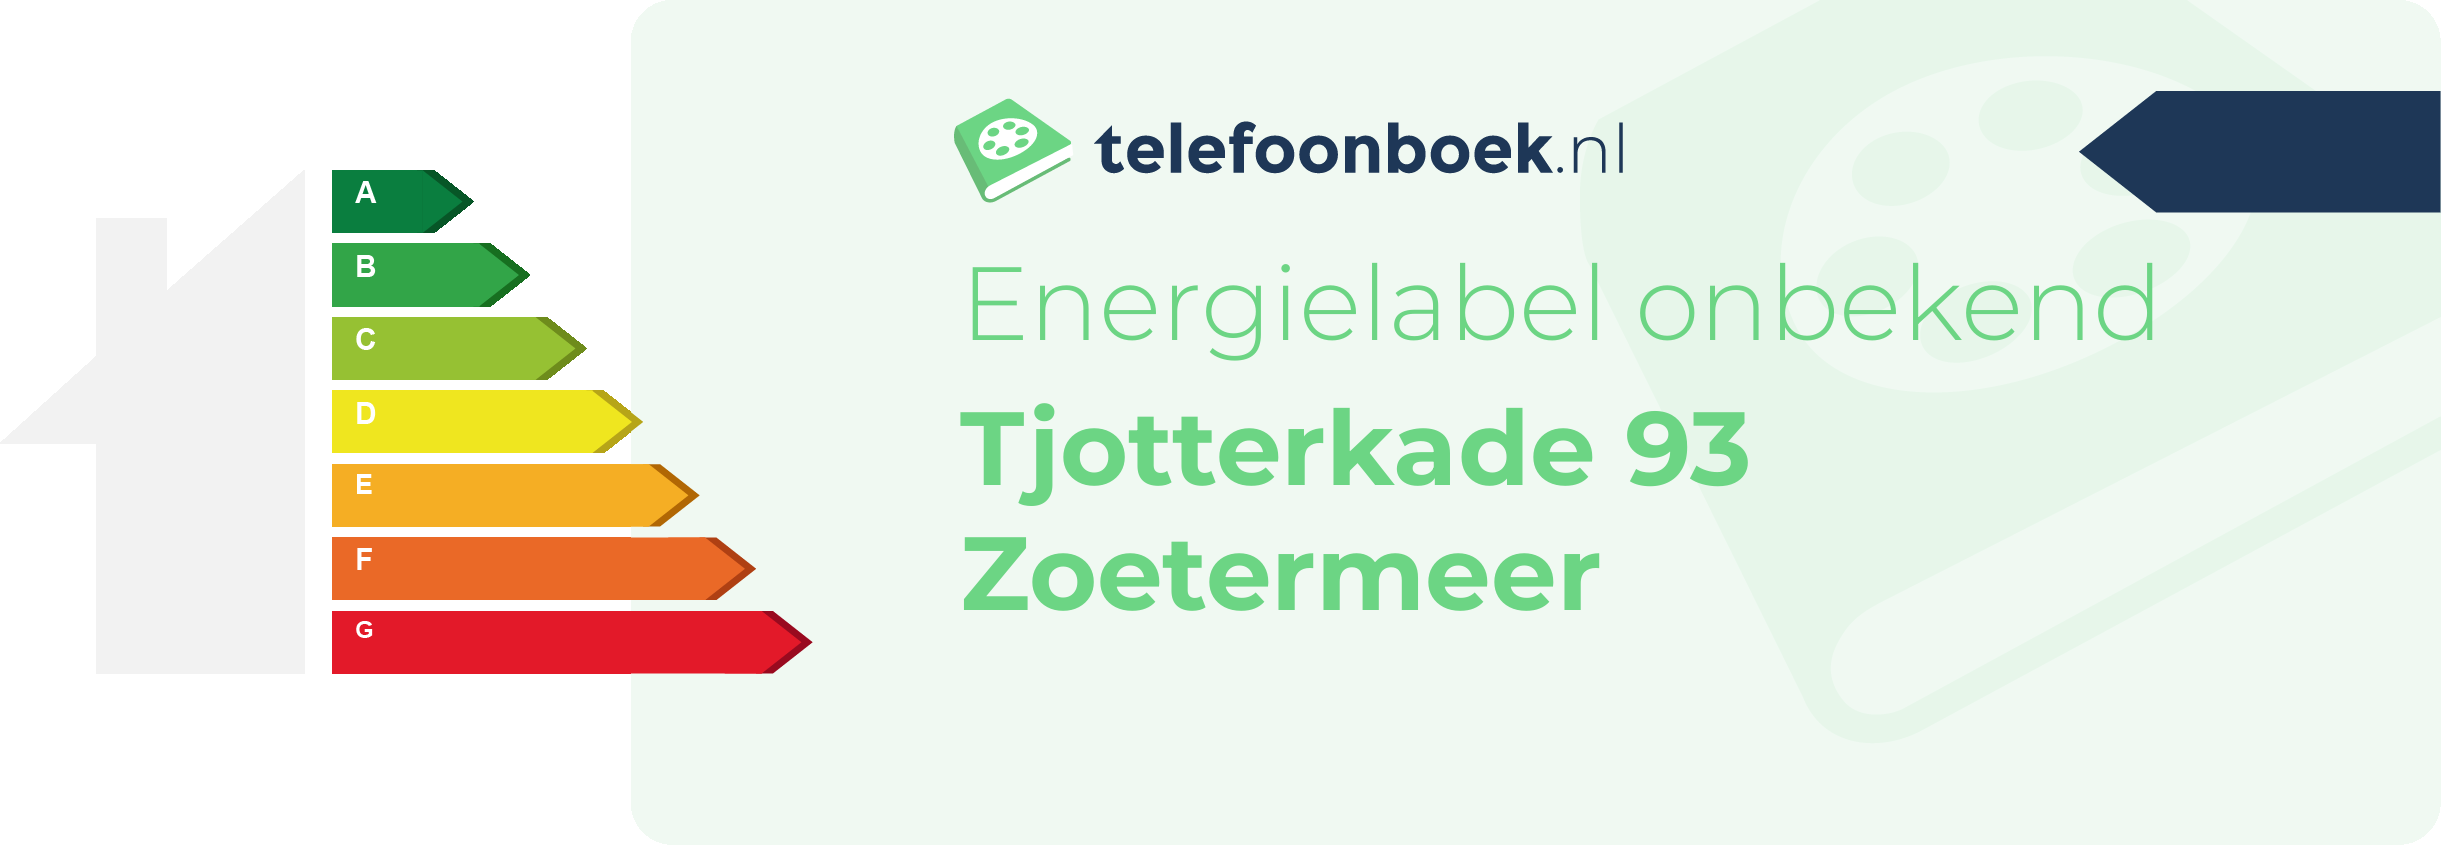 Energielabel Tjotterkade 93 Zoetermeer